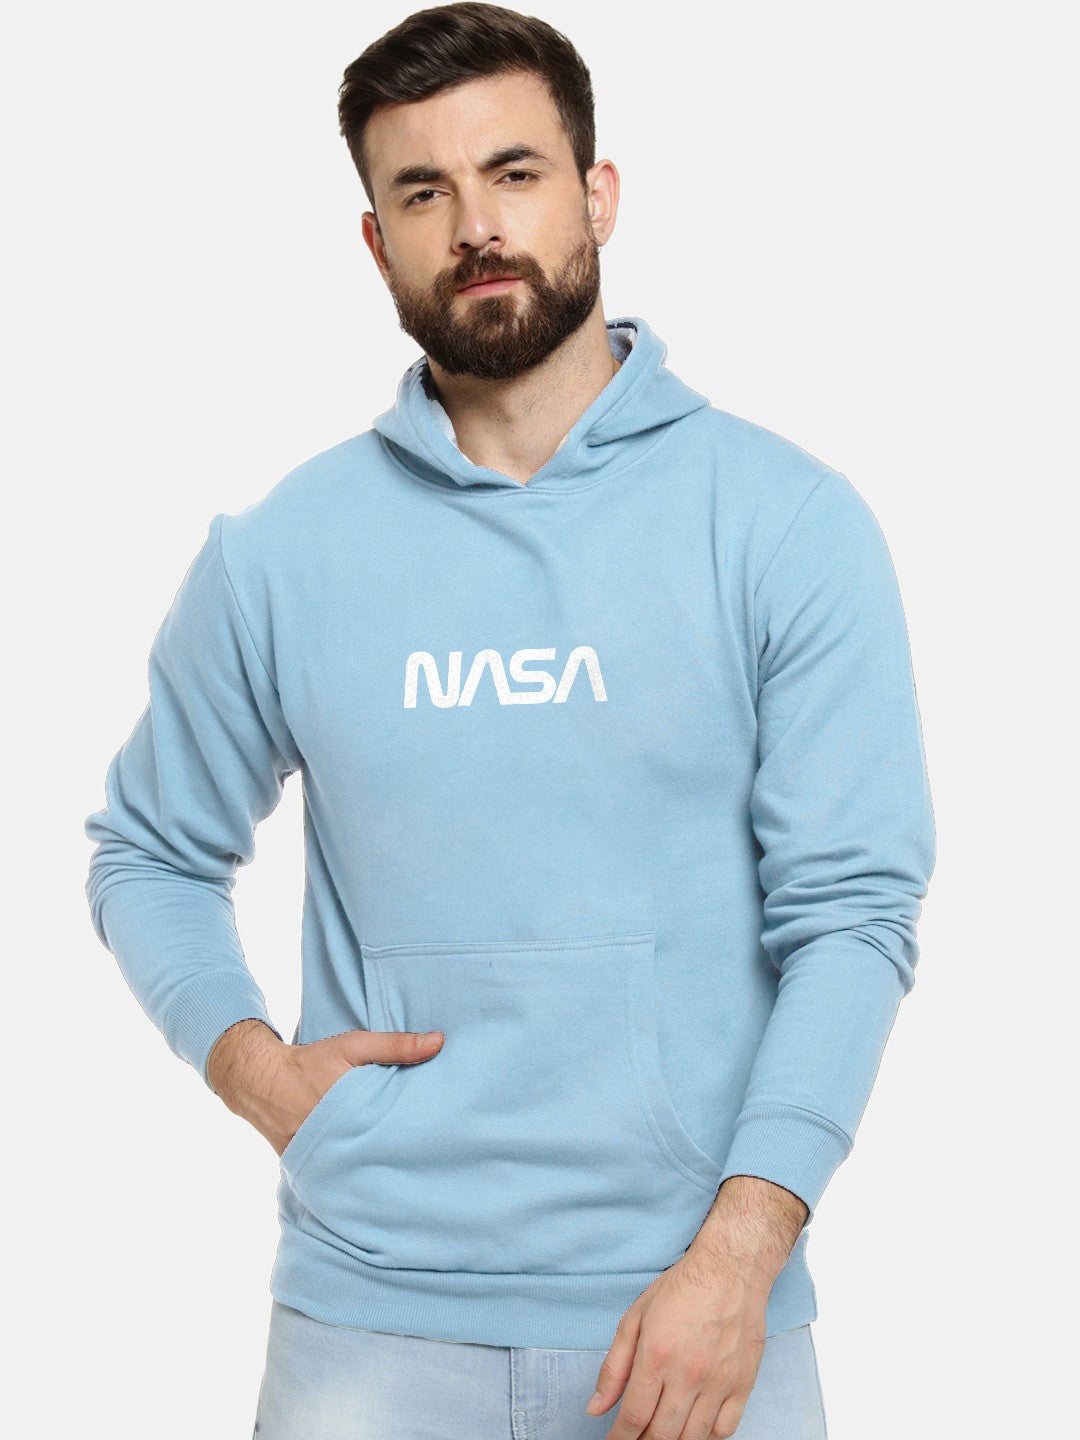 Nasa Printed Premium Hoodie For Men and Women's